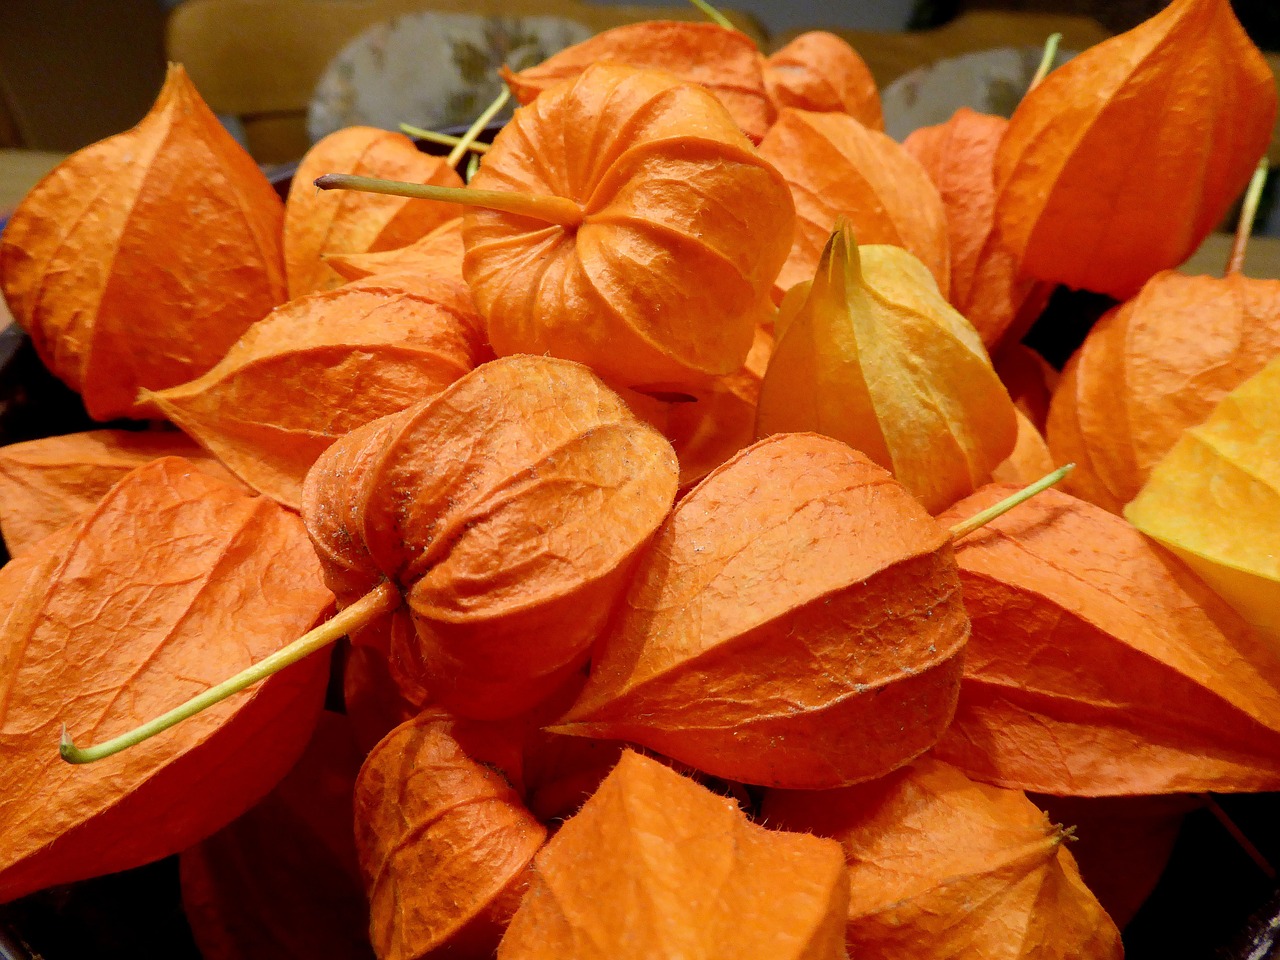 lampignonblume orange flower free photo